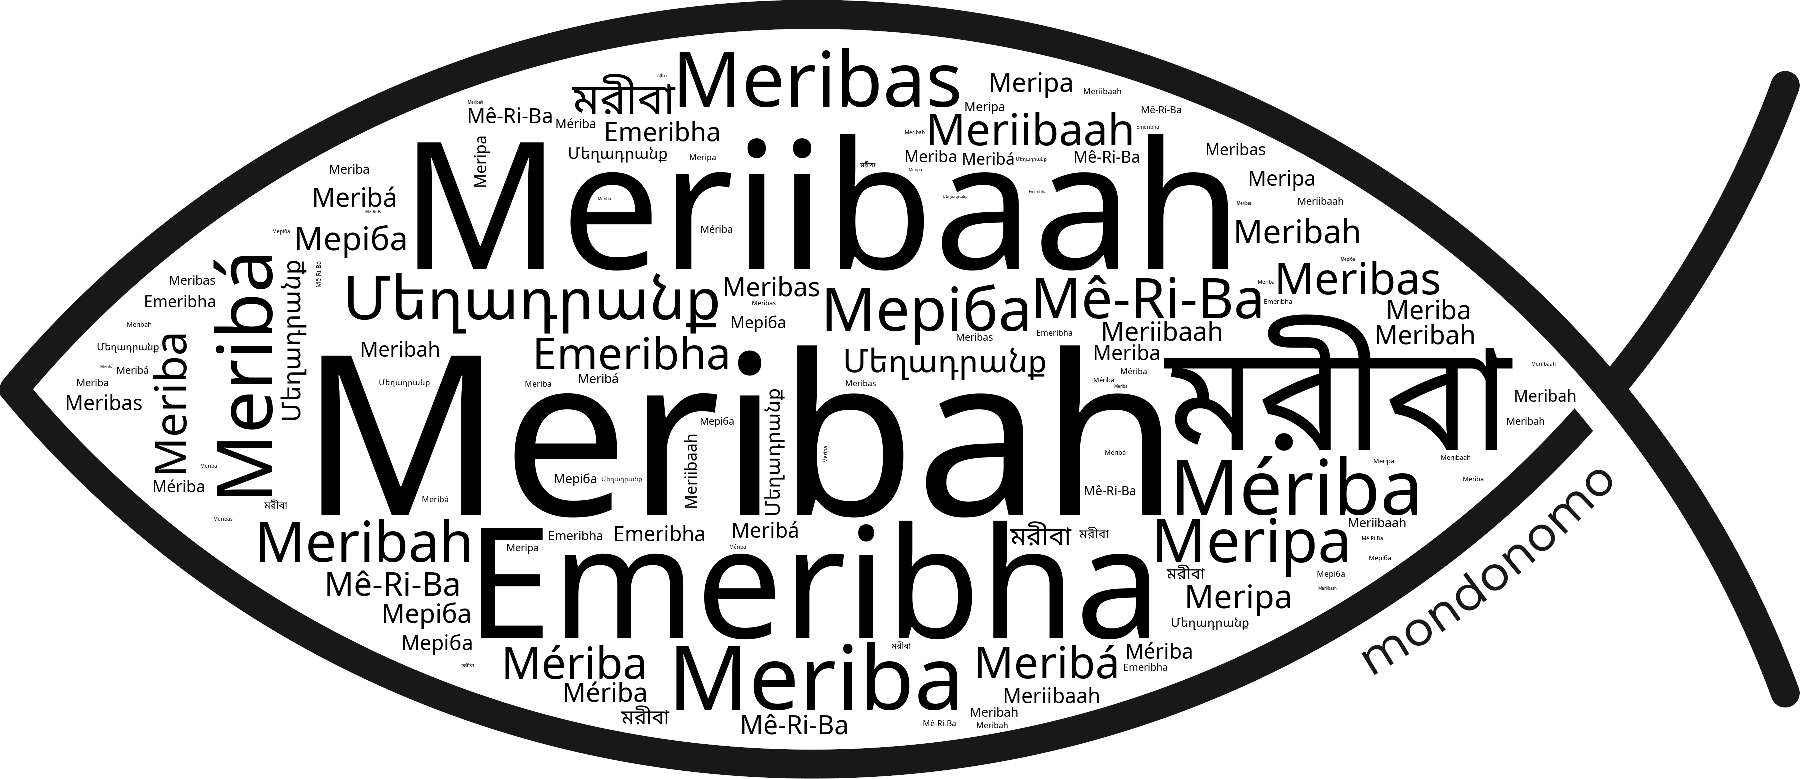 Name Meribah in the world's Bibles